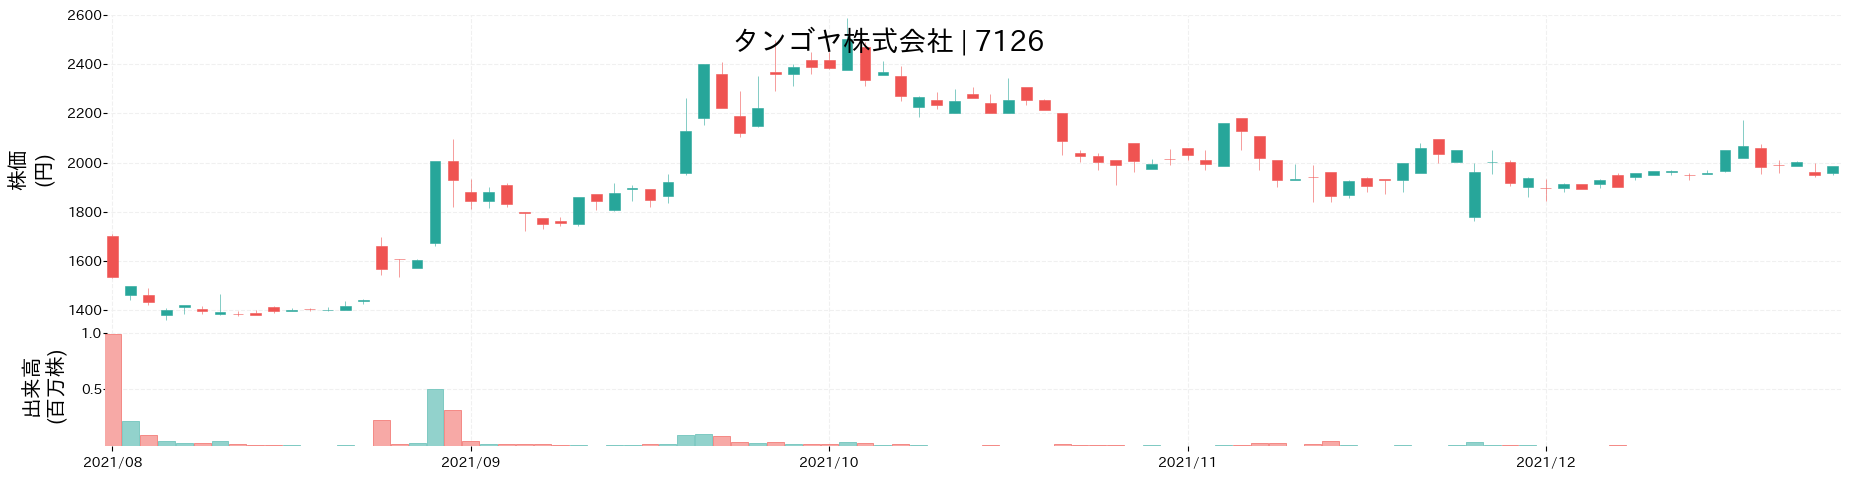 タンゴヤの株価推移(2021)